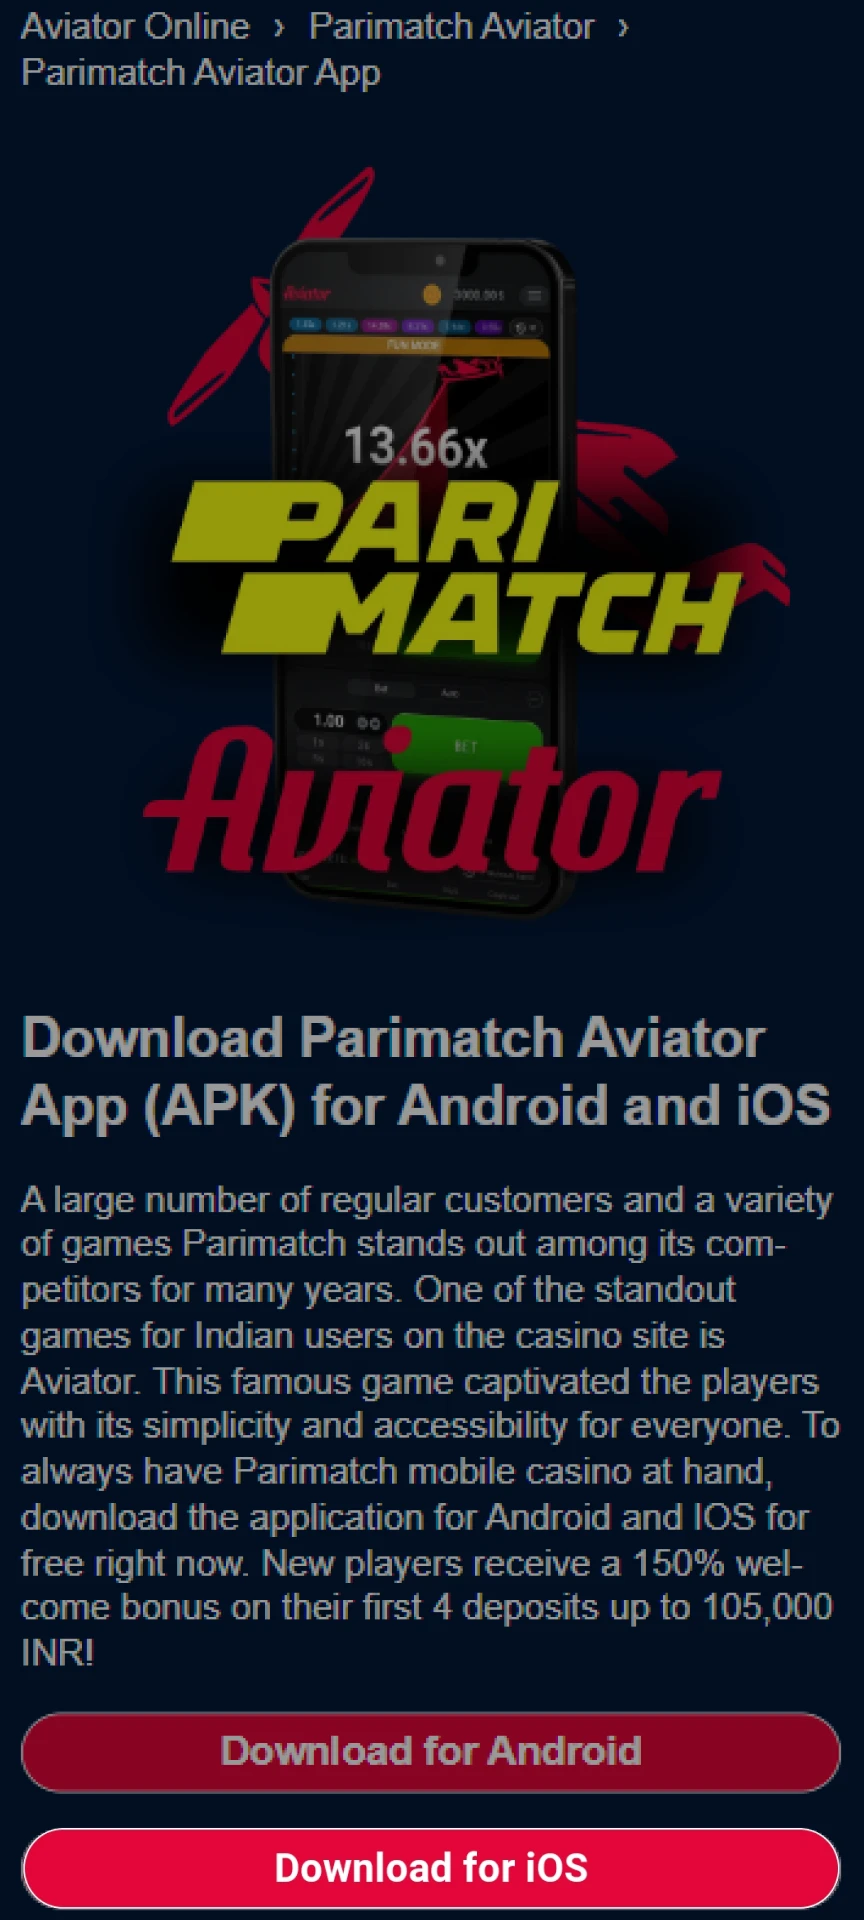 Acesse a Parimatch para fazer o download do aplicativo para iOS.